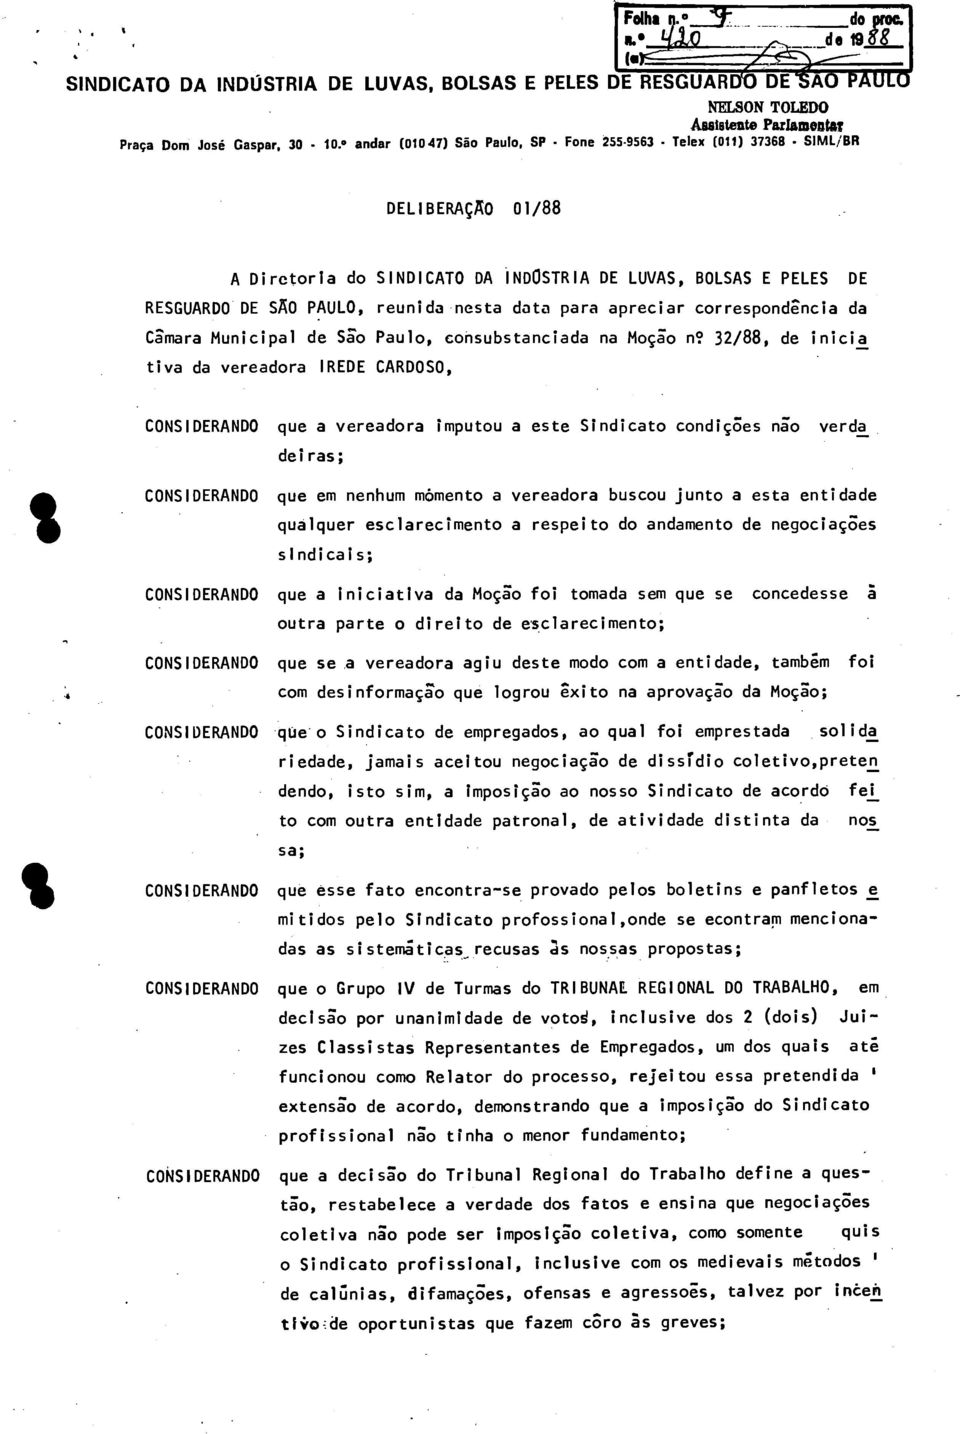 data para apreciar correspondencia da Câmara Municipal de São Paulo, consubstanciada na Moção n? 32/88, de inicia tiva da vereadora!